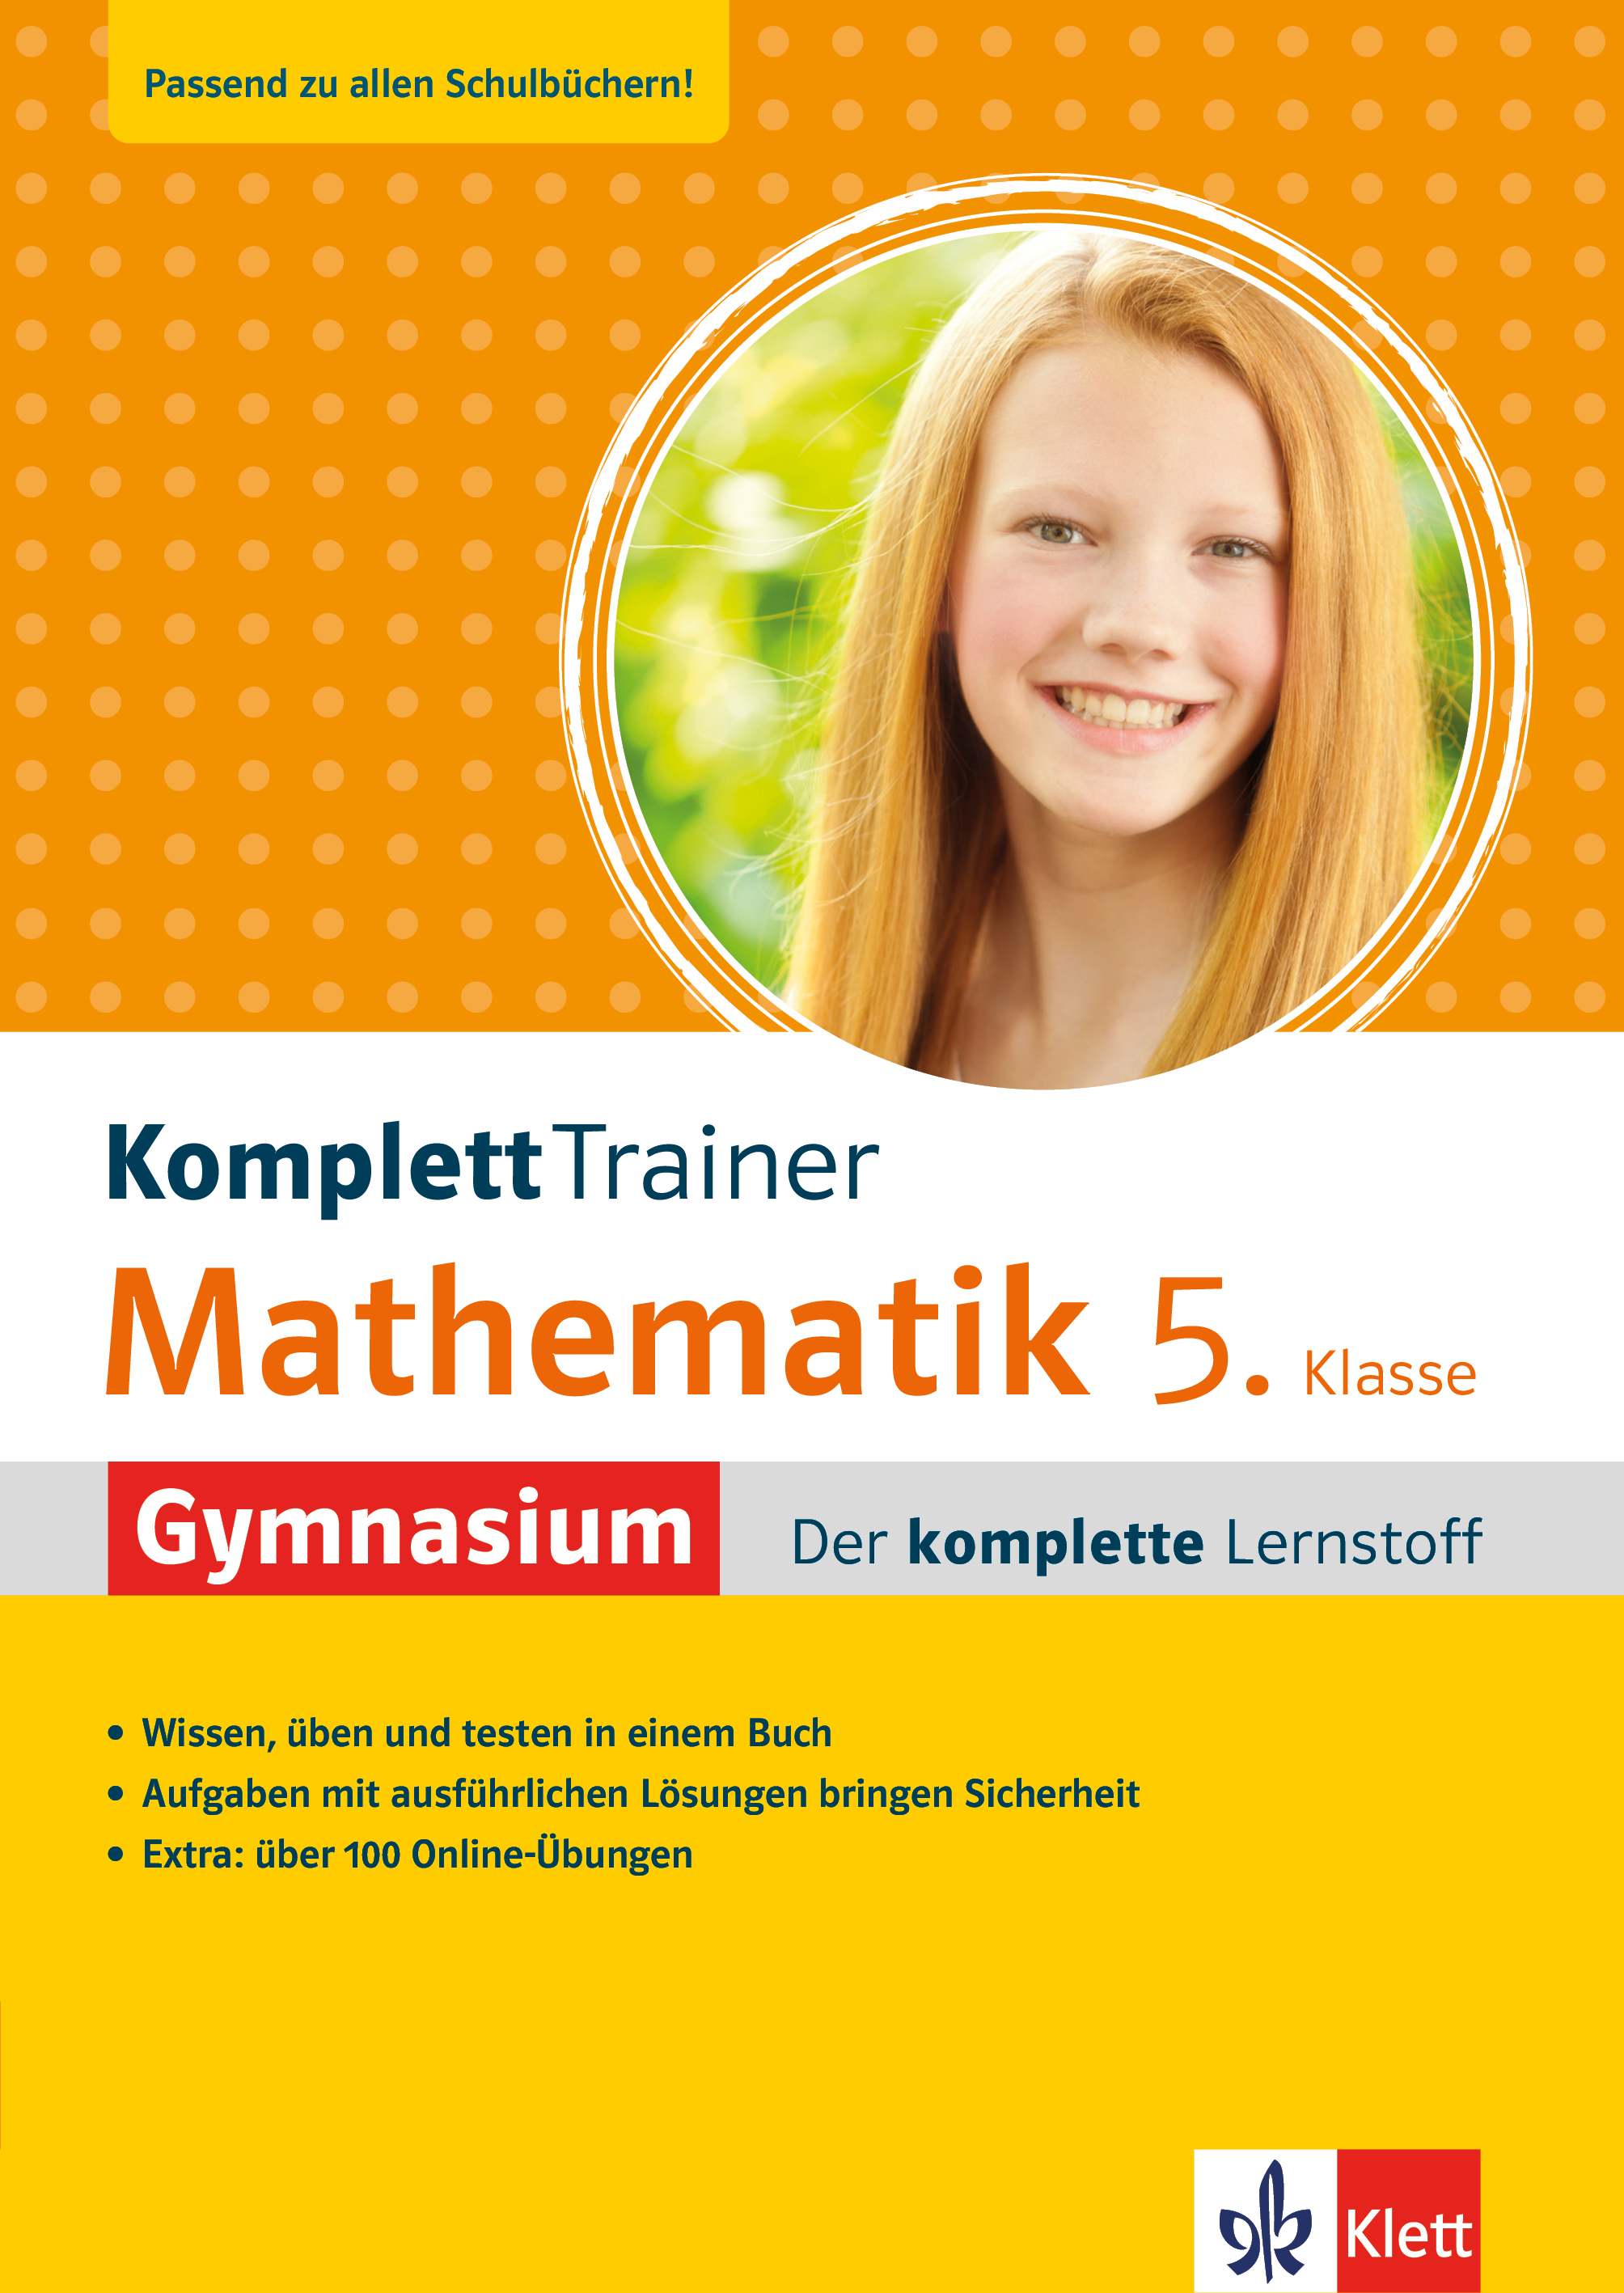 Klett KomplettTrainer Gymnasium Mathematik 5. Klasse